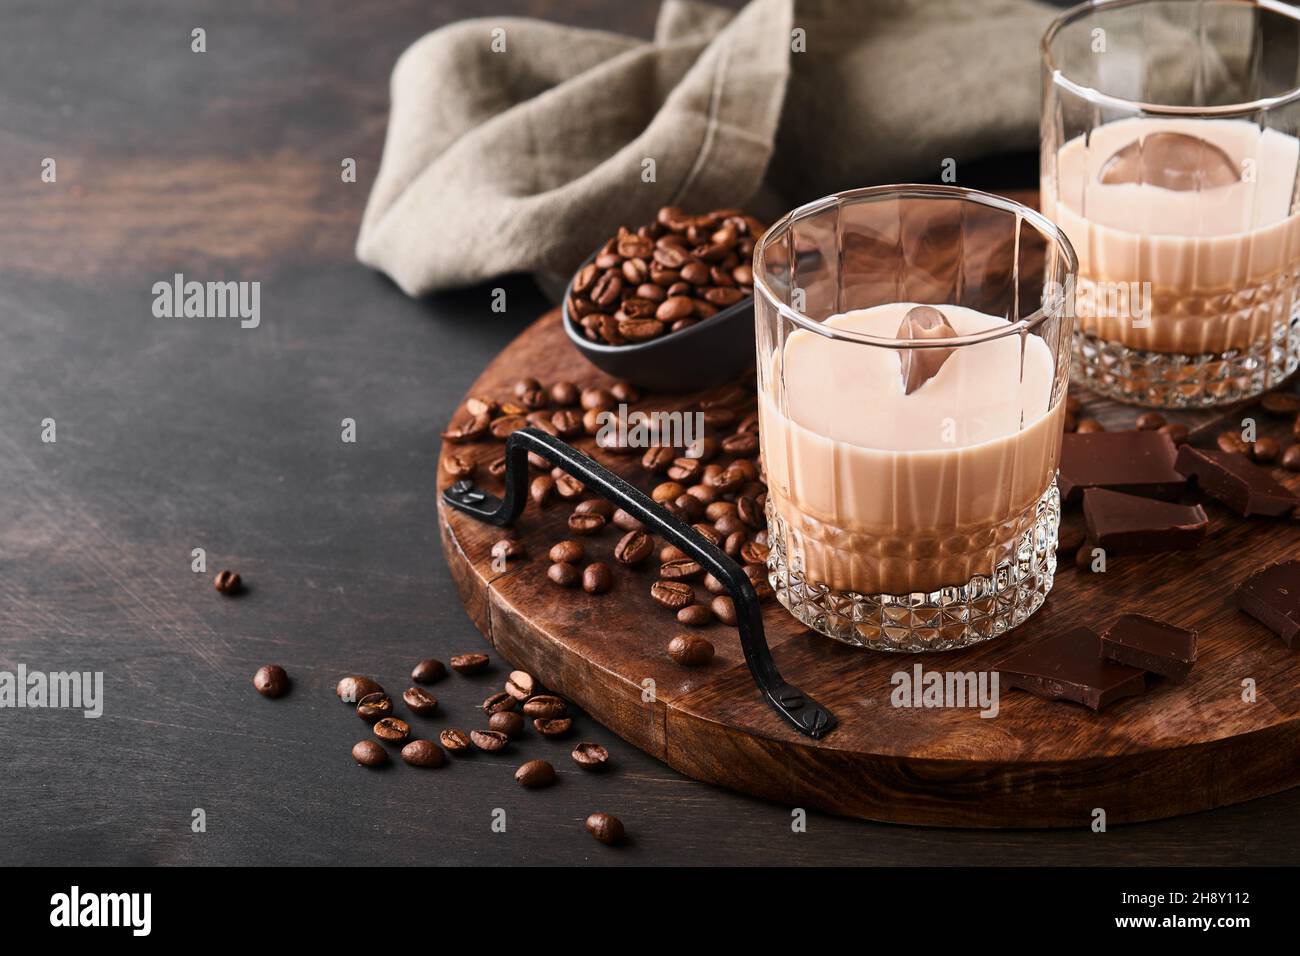 Bicchiere di crema irlandese liquore baileys con caffè torrefatto in chicchi, cannella e cioccolato su tavola di fondo in legno scuro. Messa a fuoco selettiva. Foto Stock